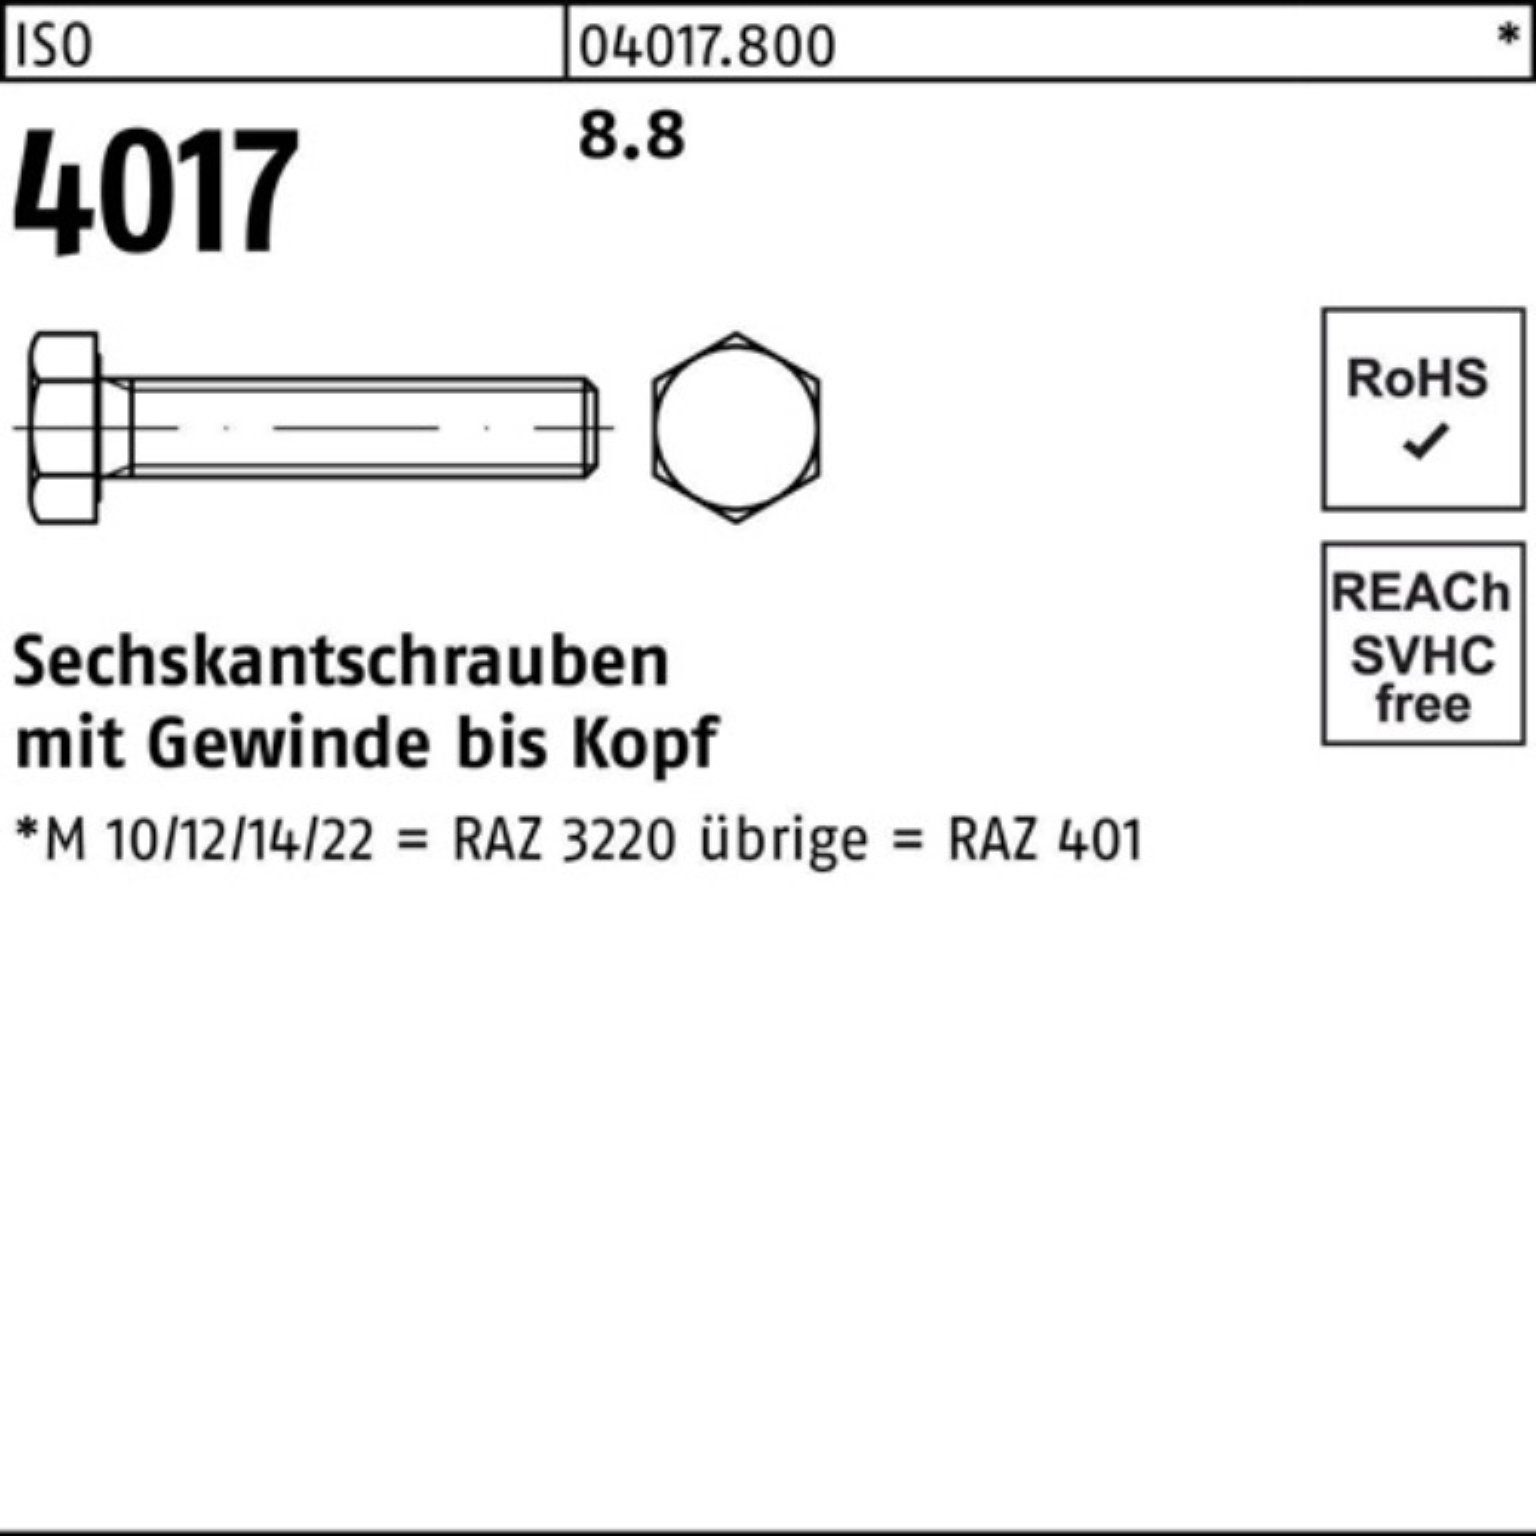 4017 ISO Sechskantschraube Bufab 110 M36x 8.8 100er Stück 1 ISO 401 Sechskantschraube VG Pack